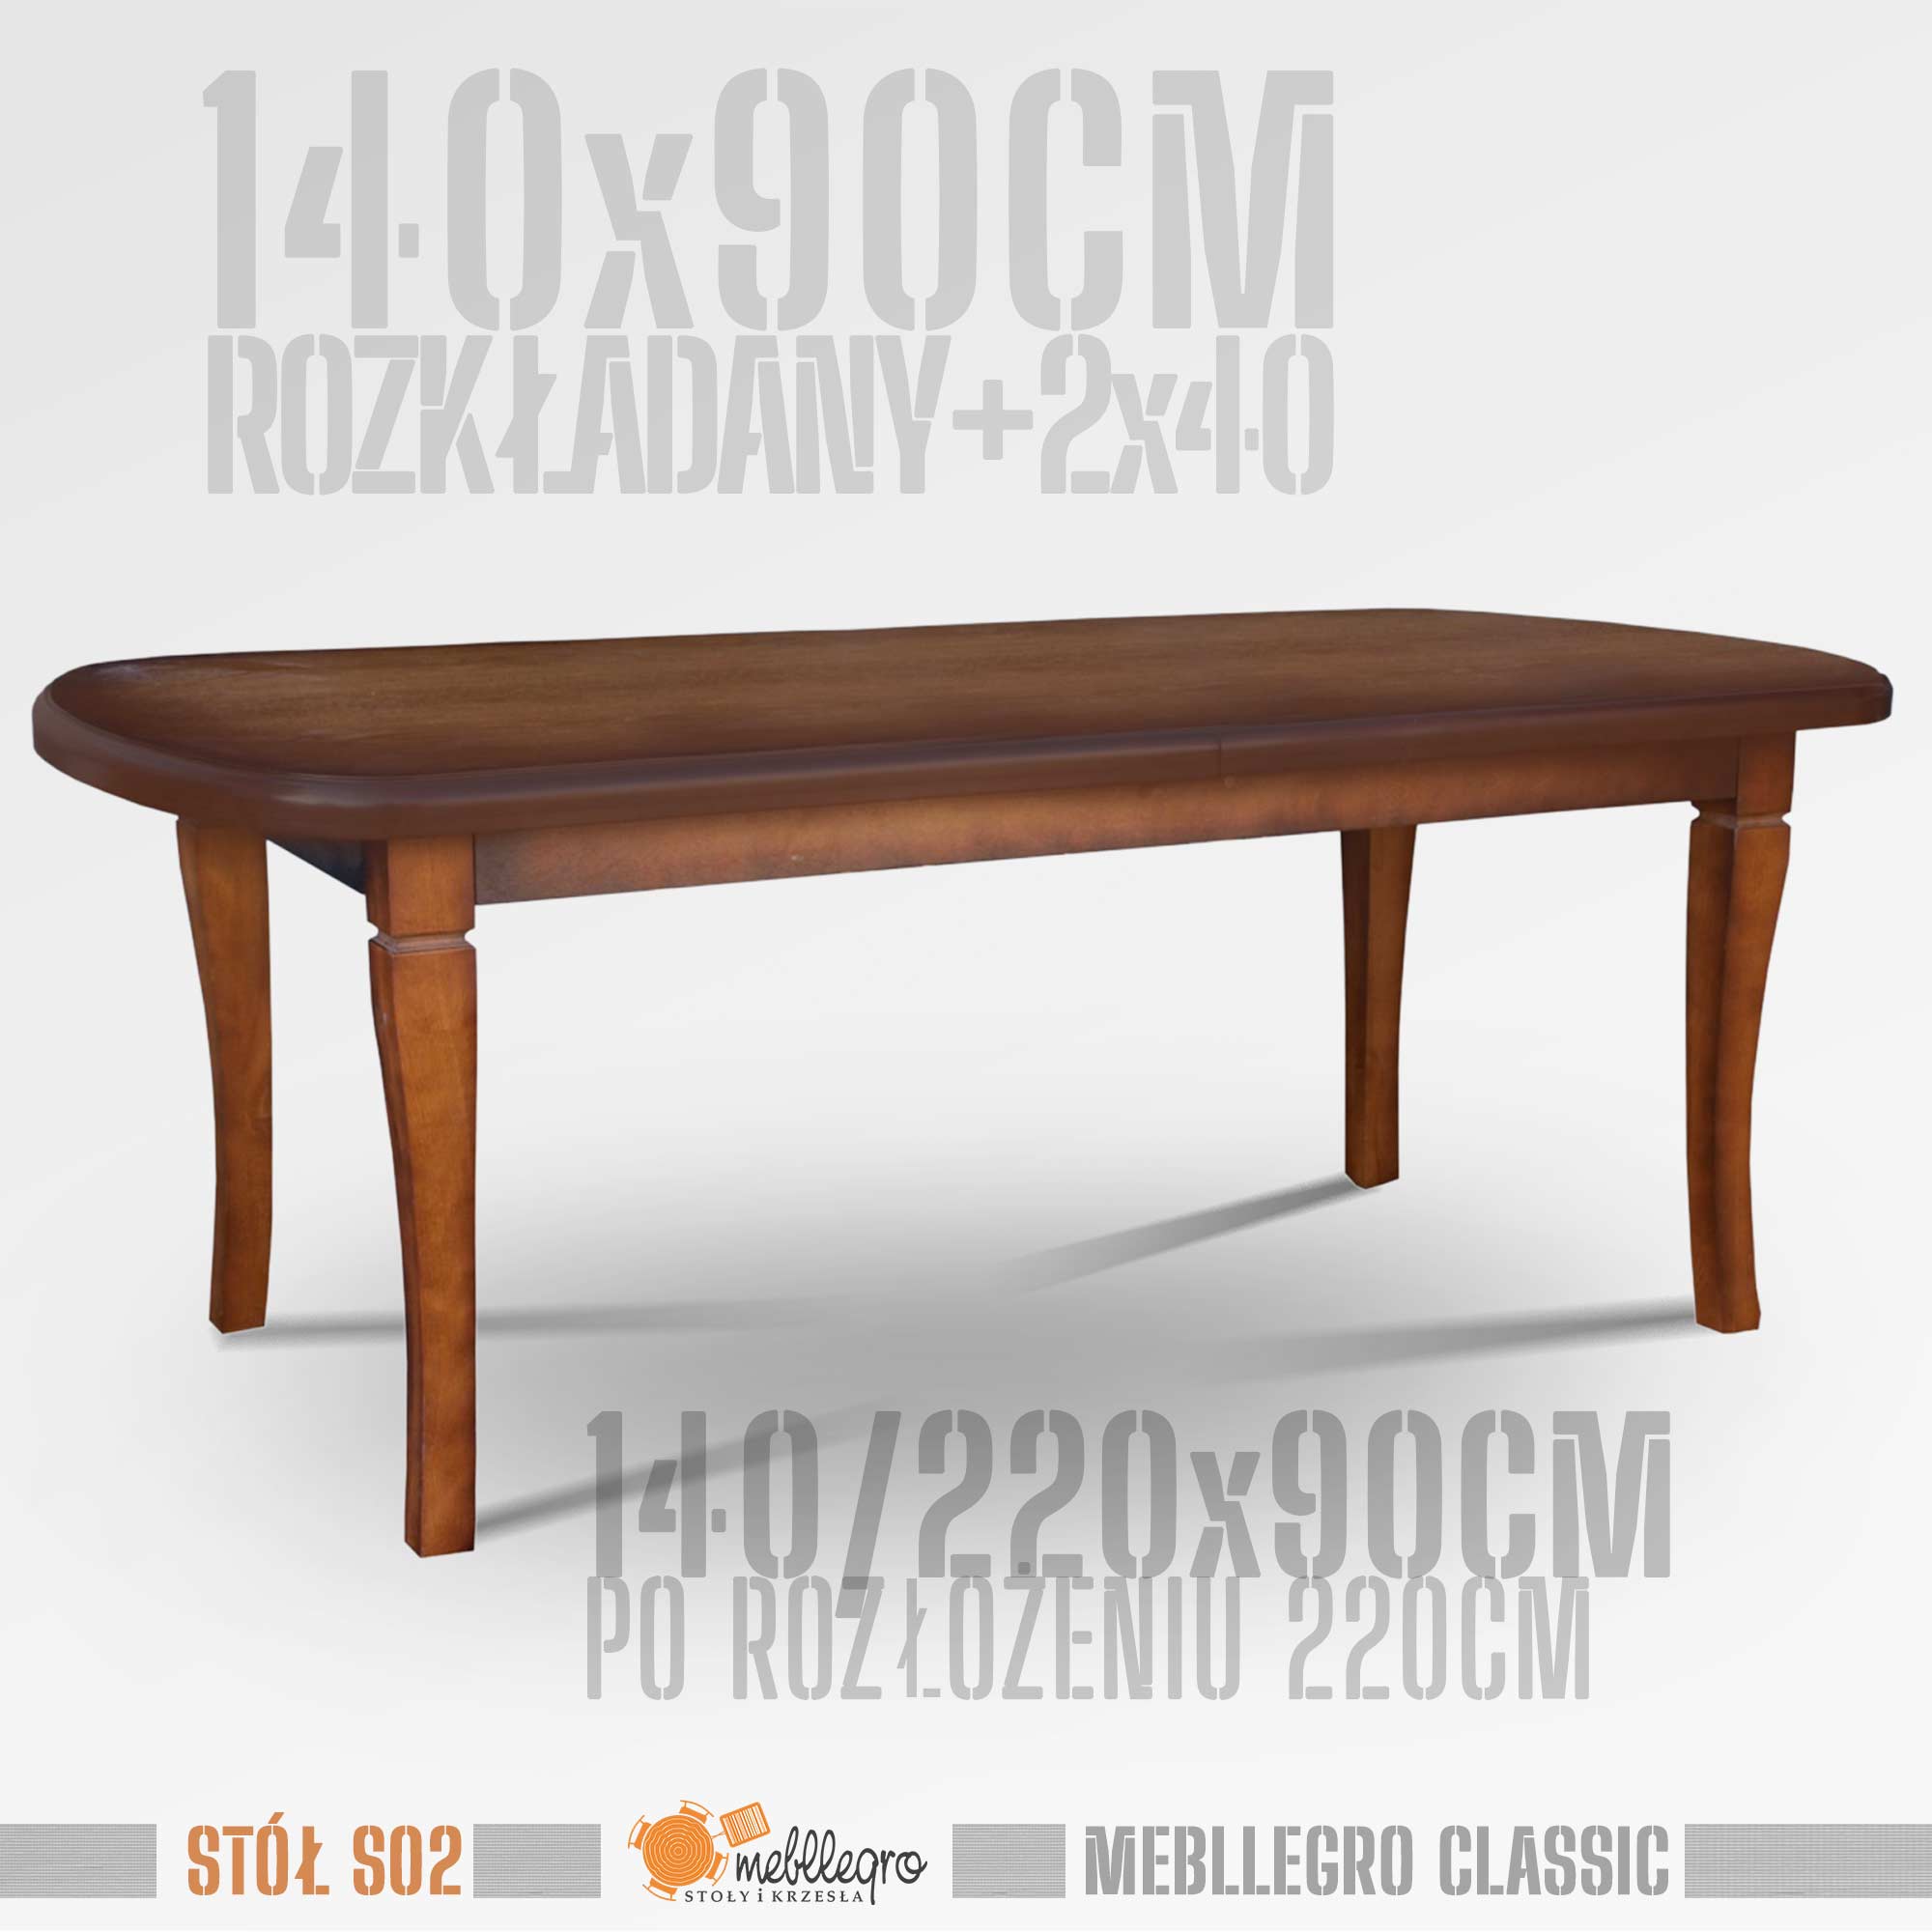 Stół drewniany S02 wymiary 140x90 po rozłożeniu 220x90 / MEBLLEGRO CLASSIC